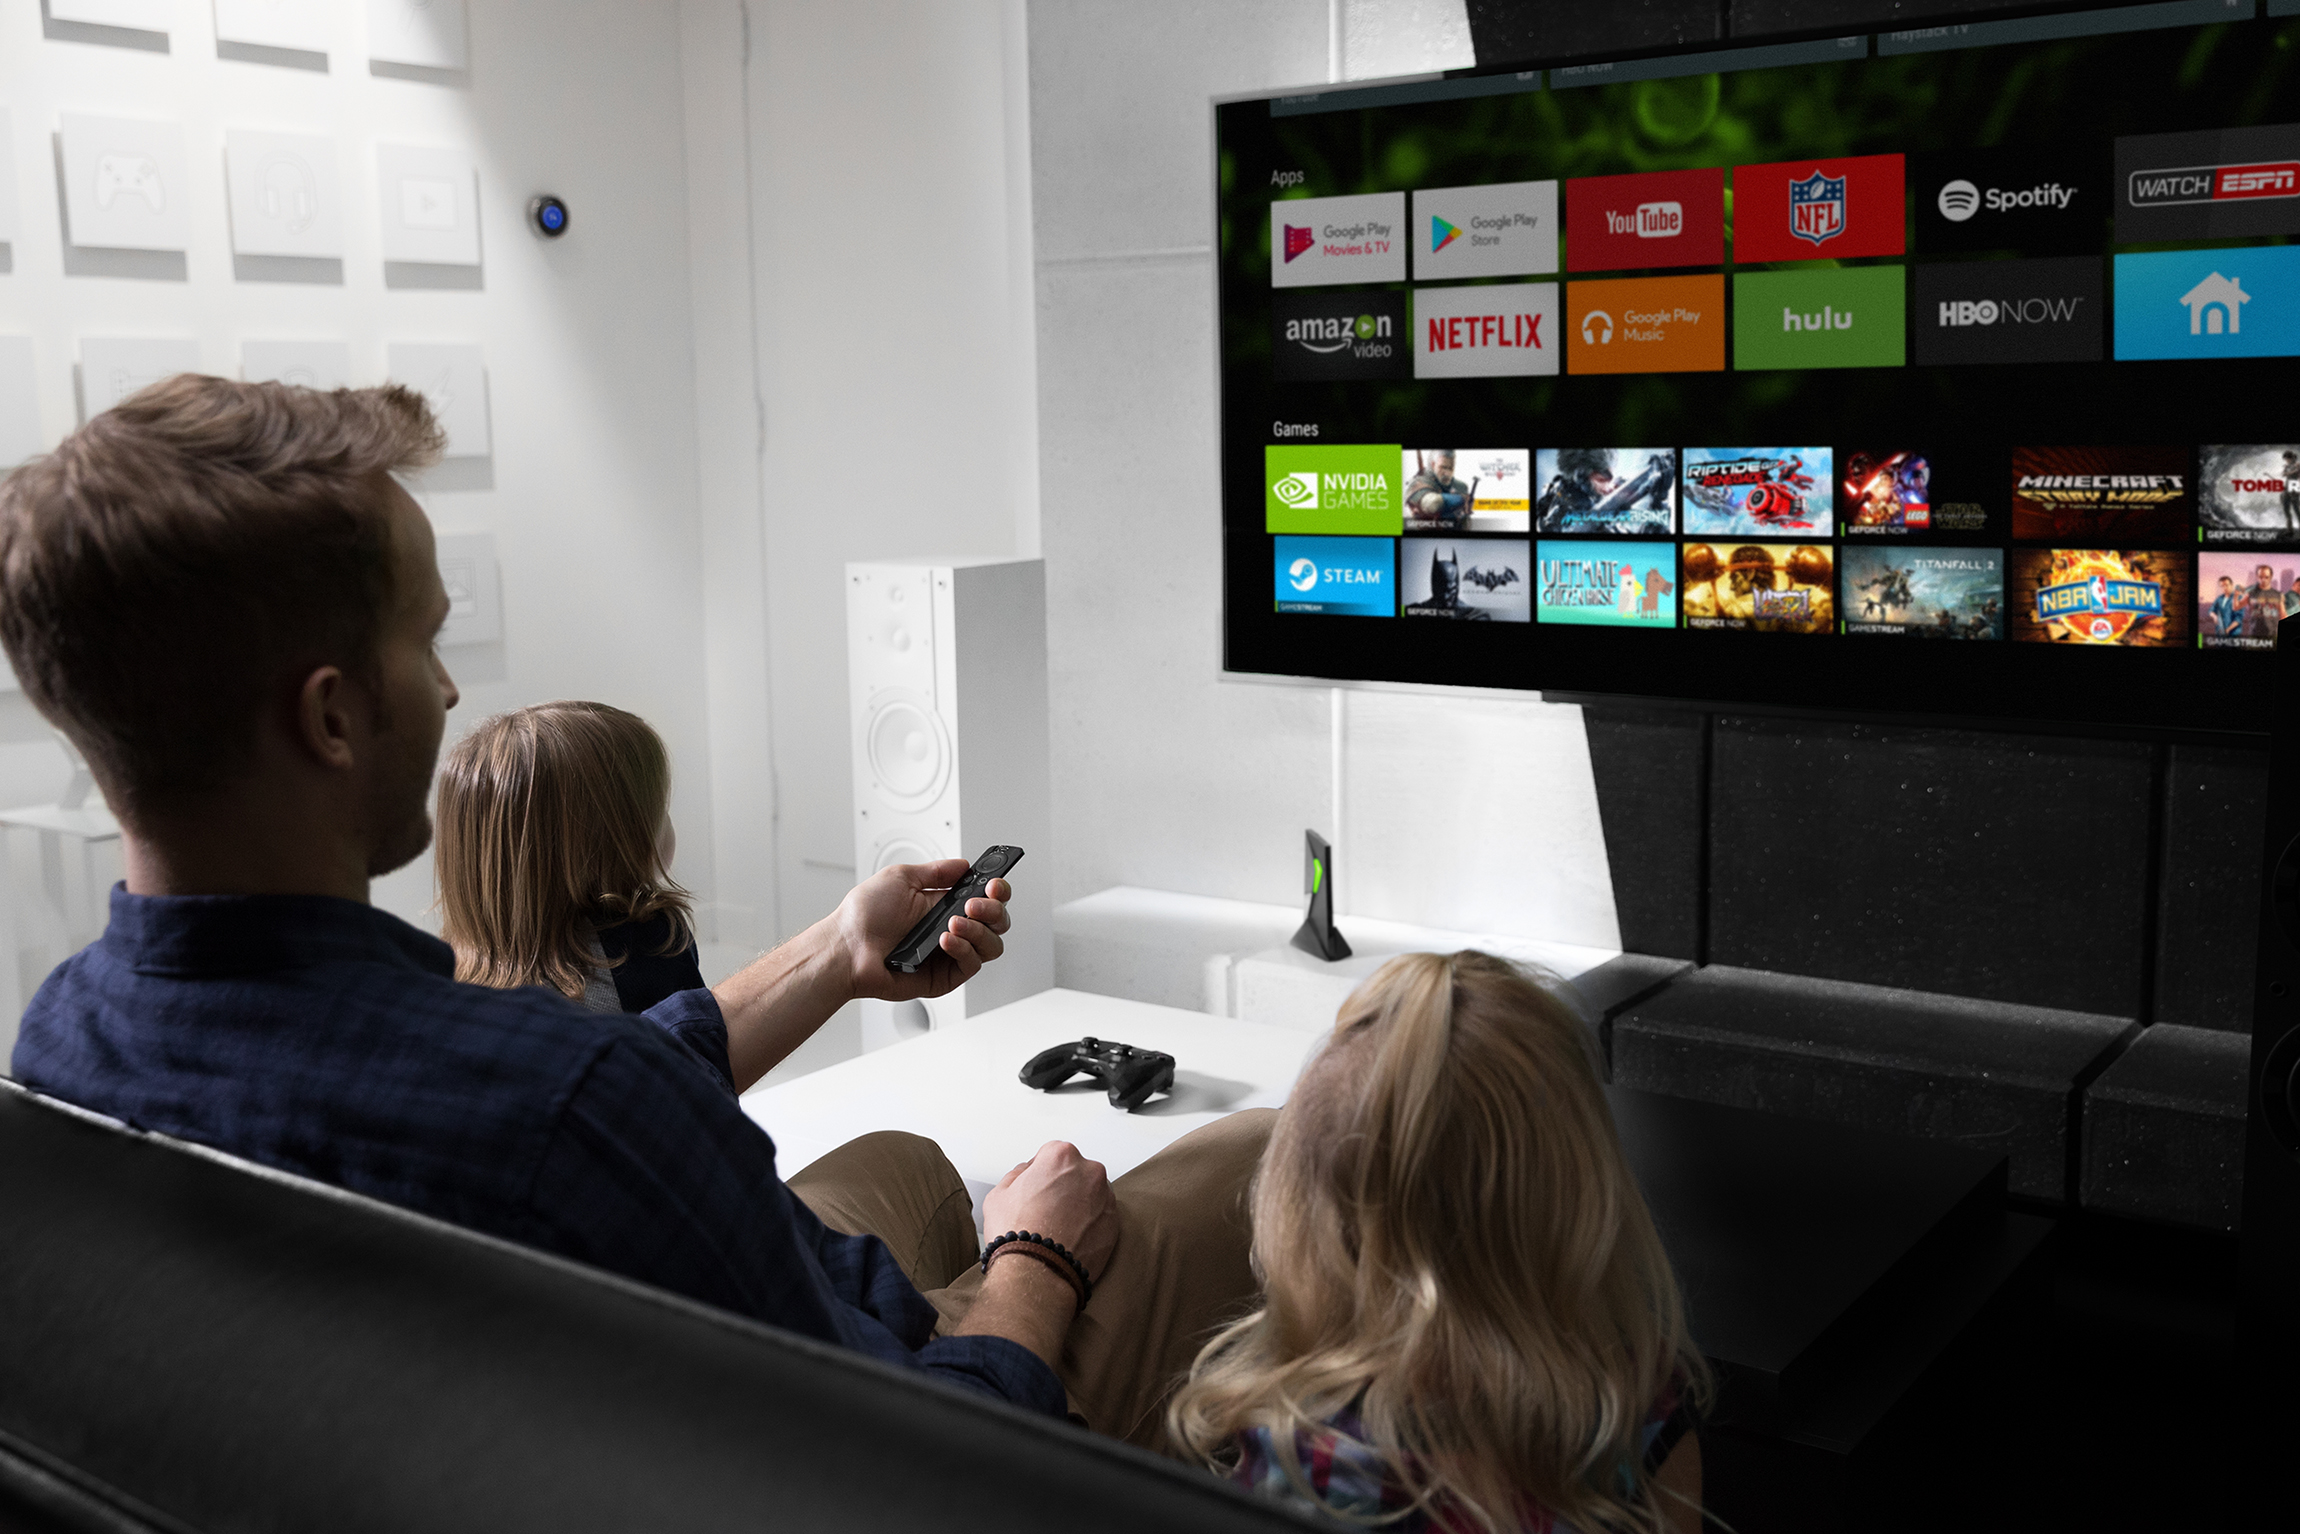 Google ассистент телевизор. NVIDIA Shield TV. Развлечения телевизор. Развлекательное ТВ. Телевизор развлечение для детей.